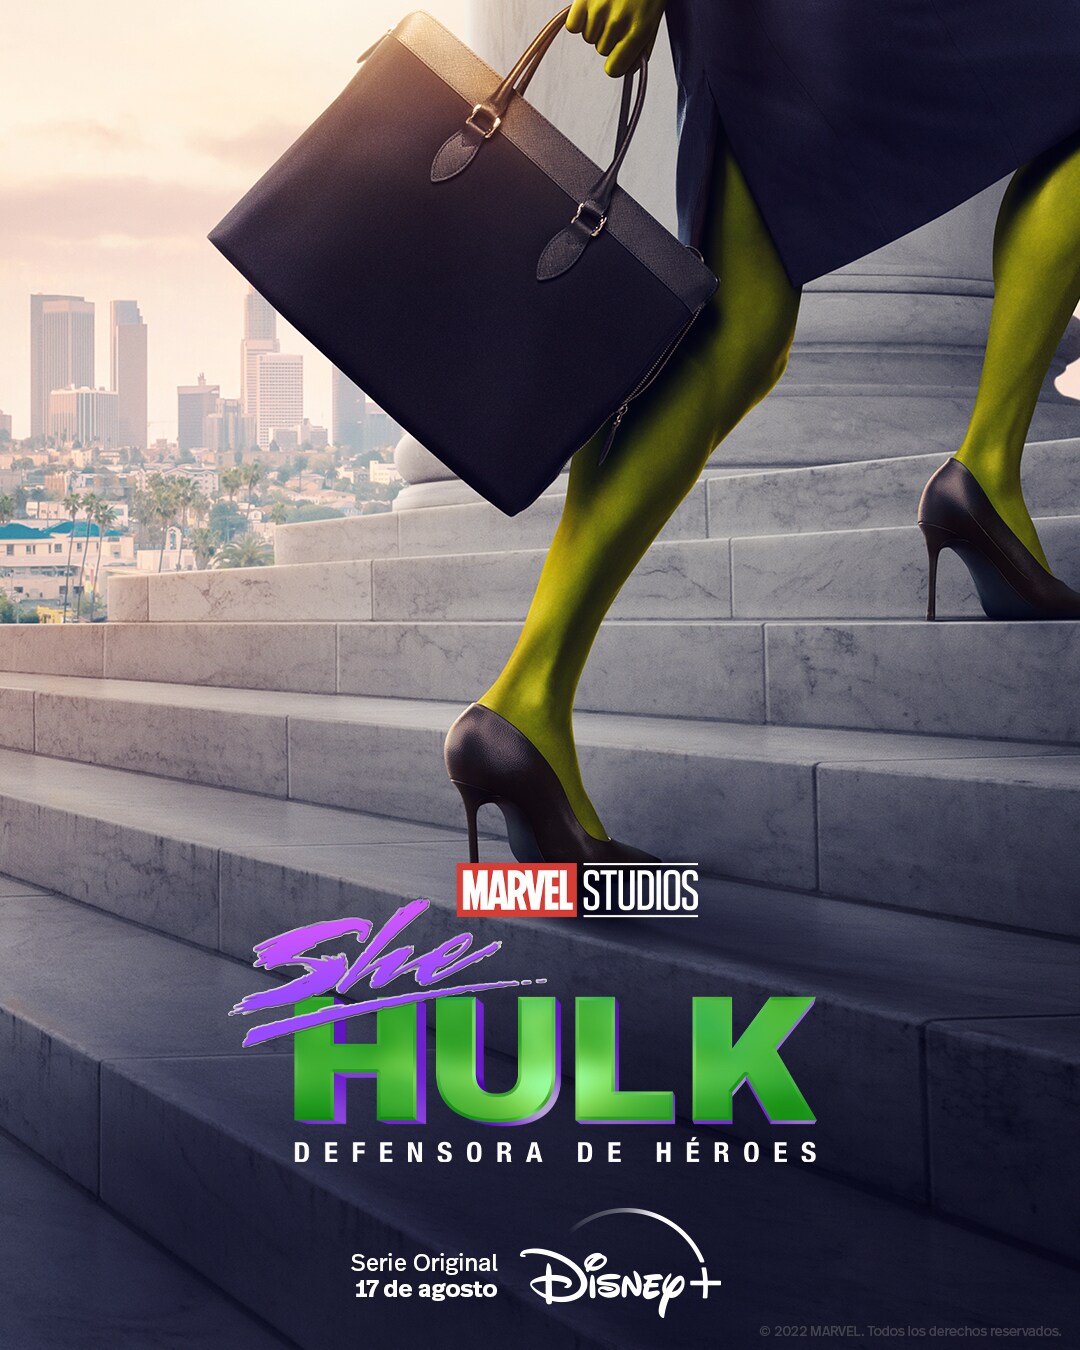 She Hulk debocha de efeitos grotescos em trama divertida - 15/10/2022 -  Ilustrada - Folha